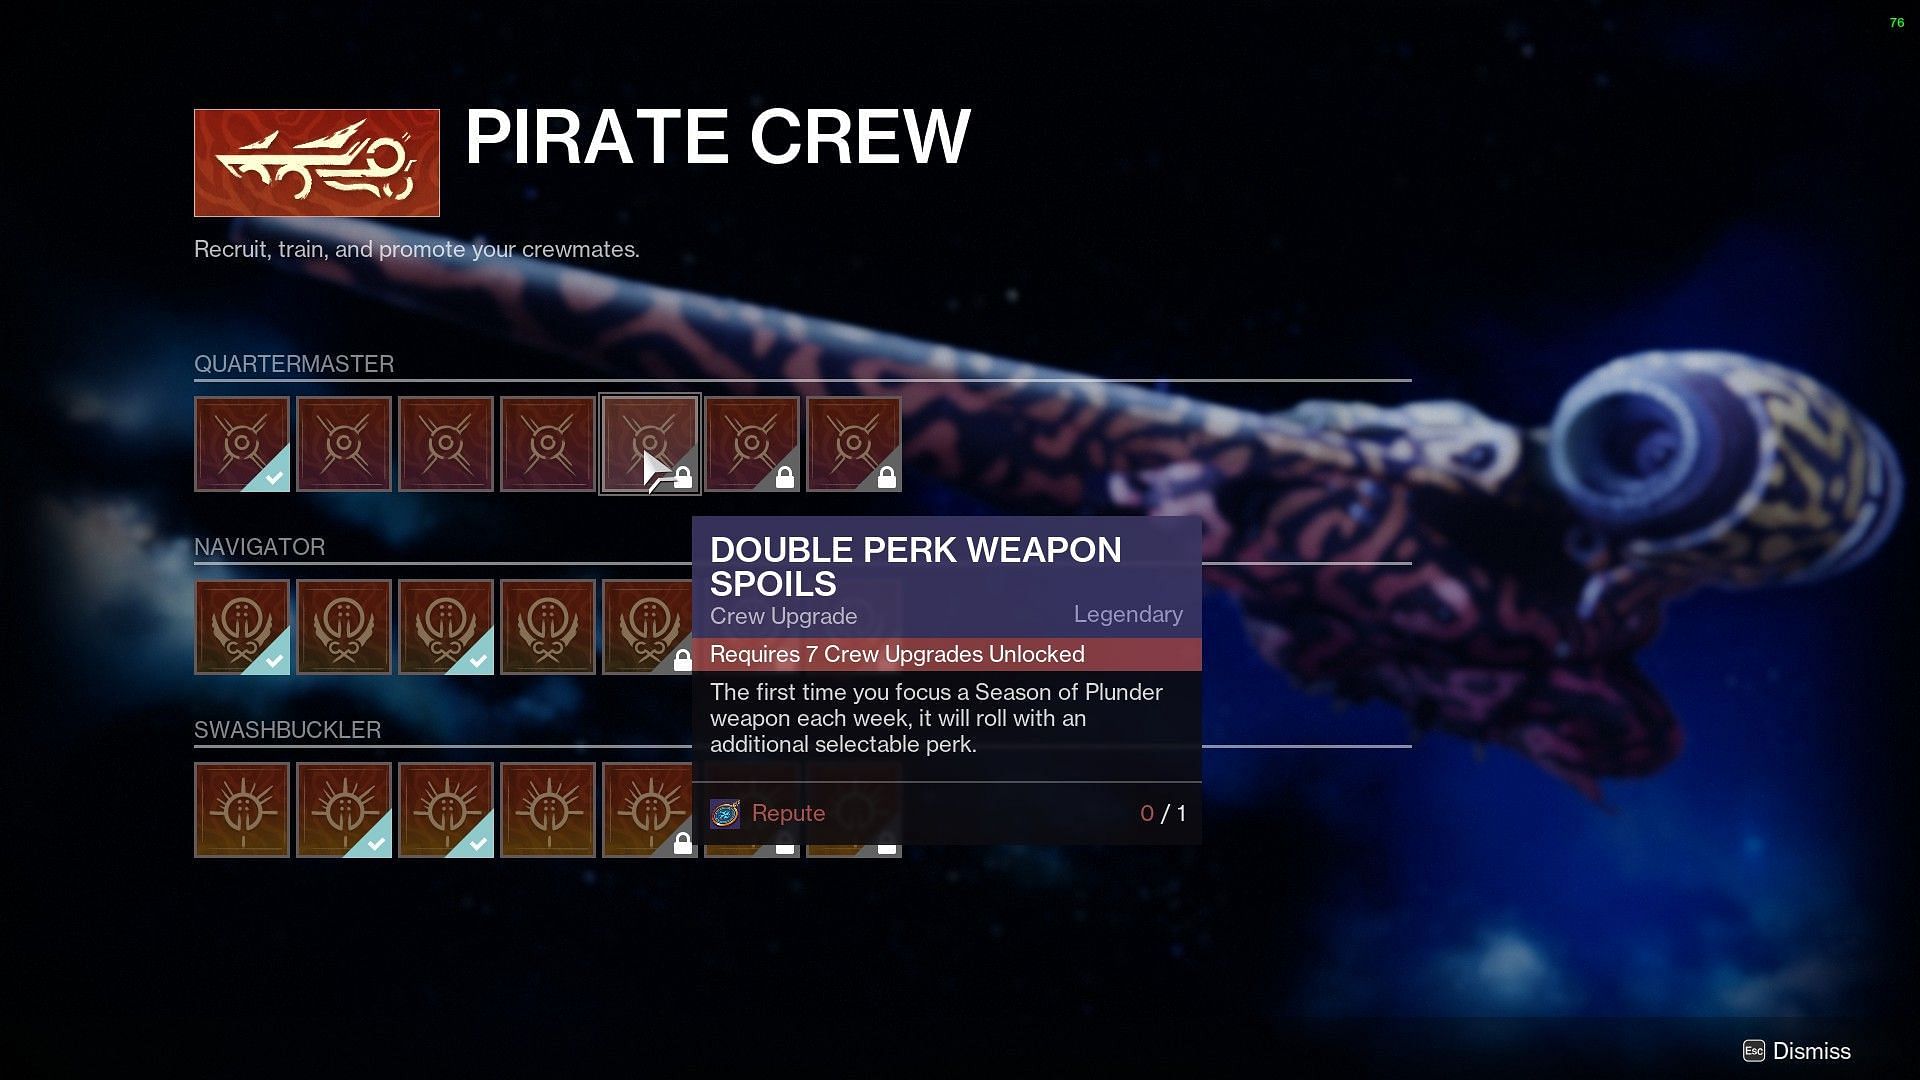 Double Perk Weapon Spoils (Image via Destiny 2)